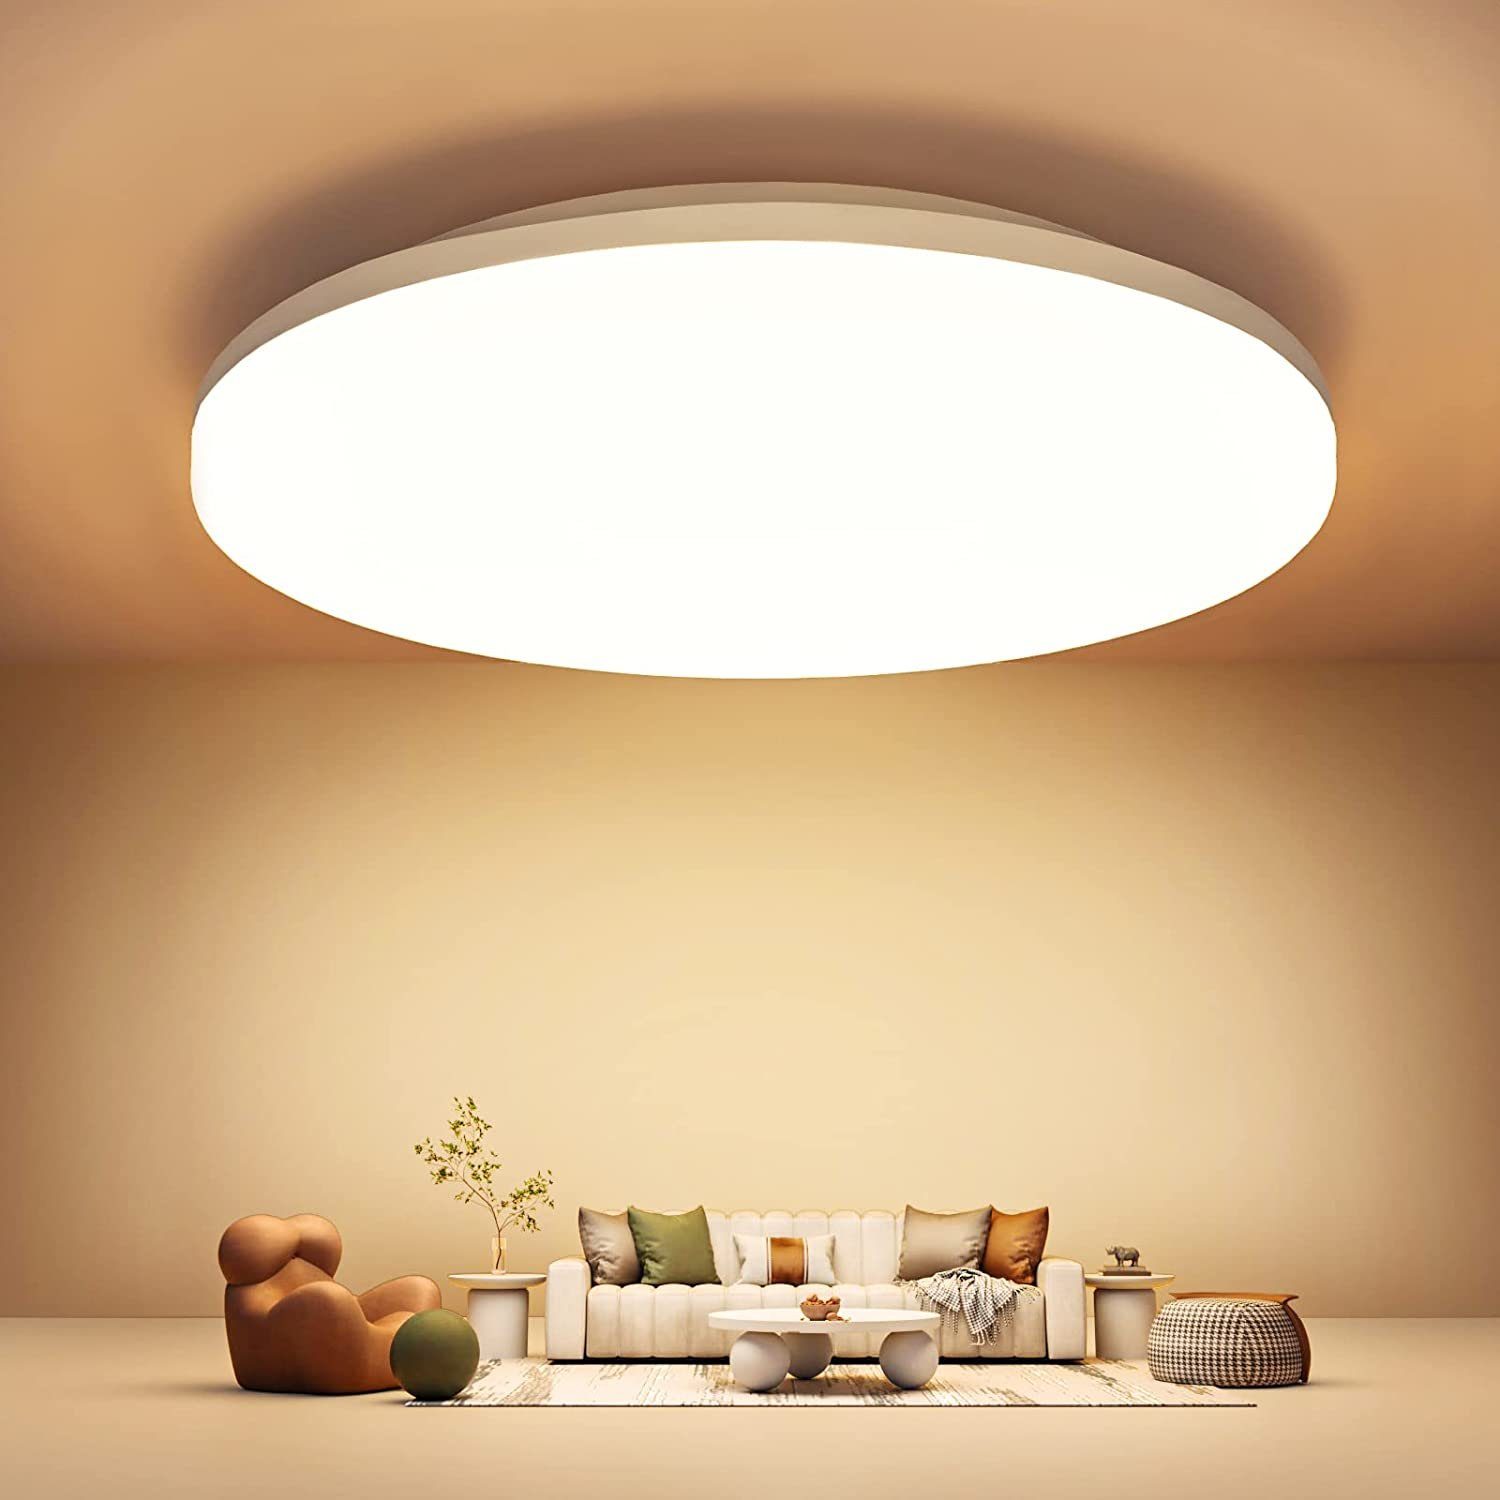 EUARY LED Deckenspots Led Deckenlampe Deckenleuchte Flach Lampen Ceiling  Light Küchenlampe, Deckenbeleuchtung 2700K Warmweiss IP5418W 2200LM für Bad  Flur Keller